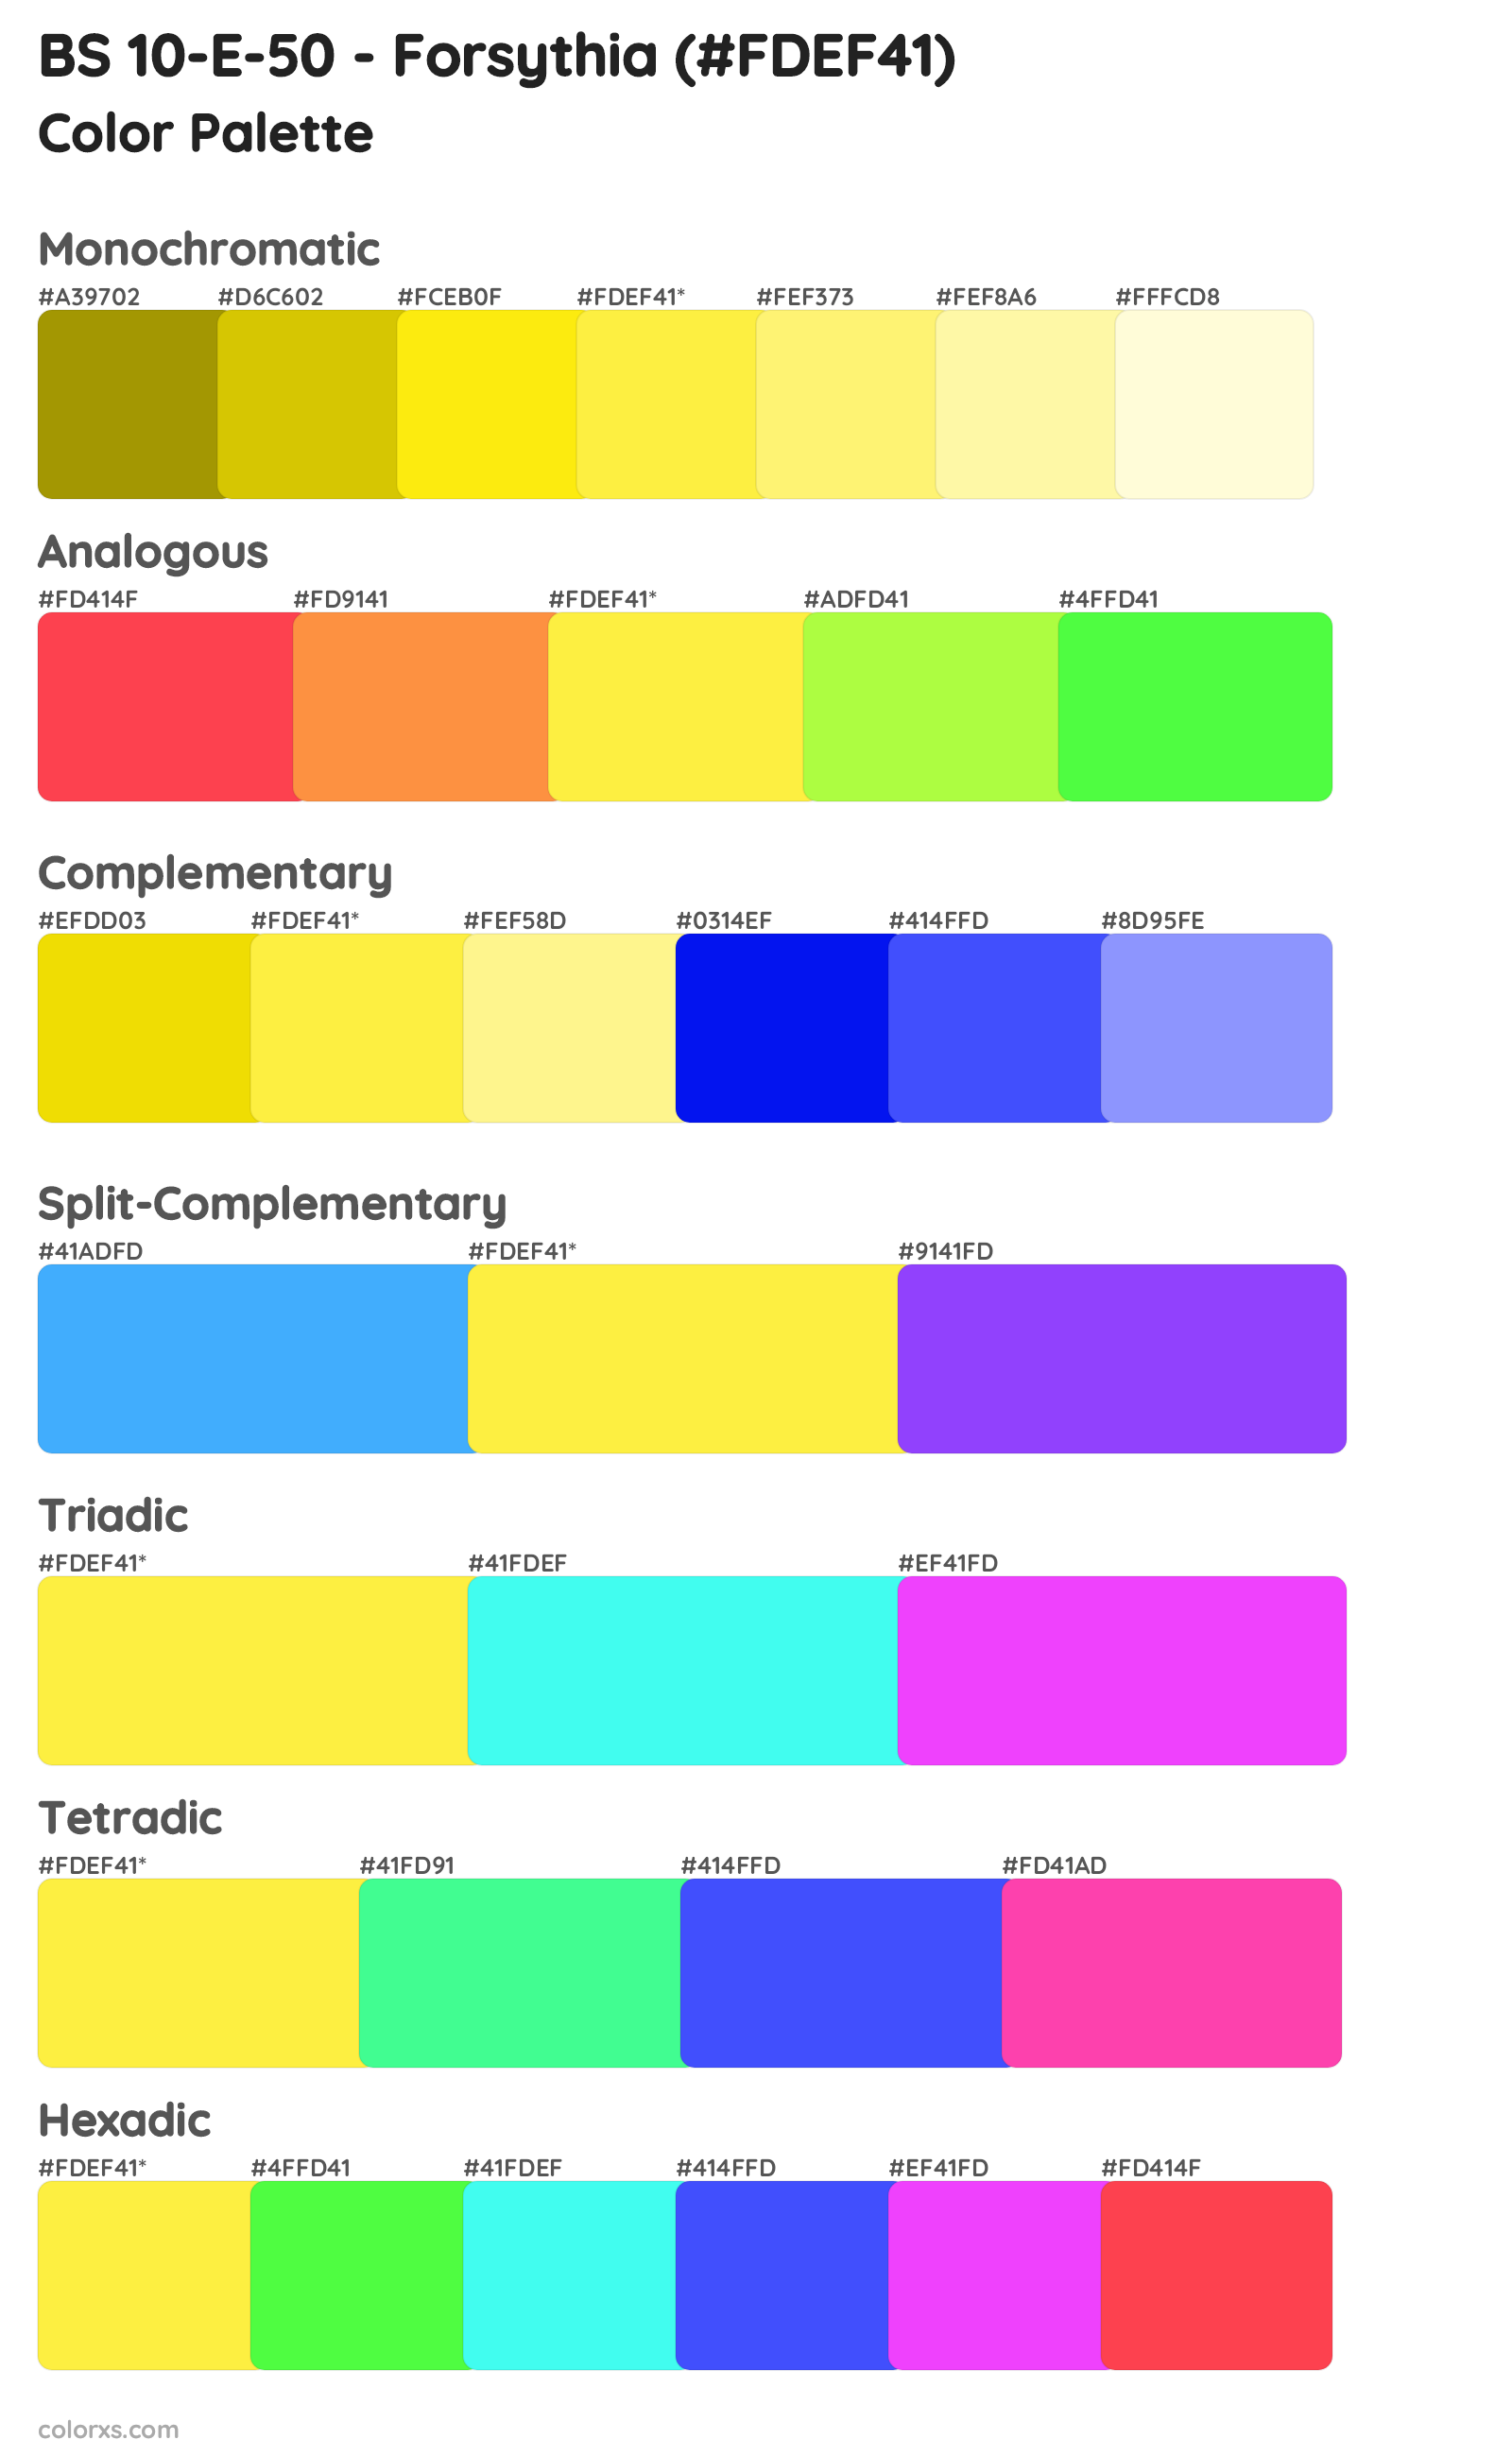 BS 10-E-50 - Forsythia Color Scheme Palettes